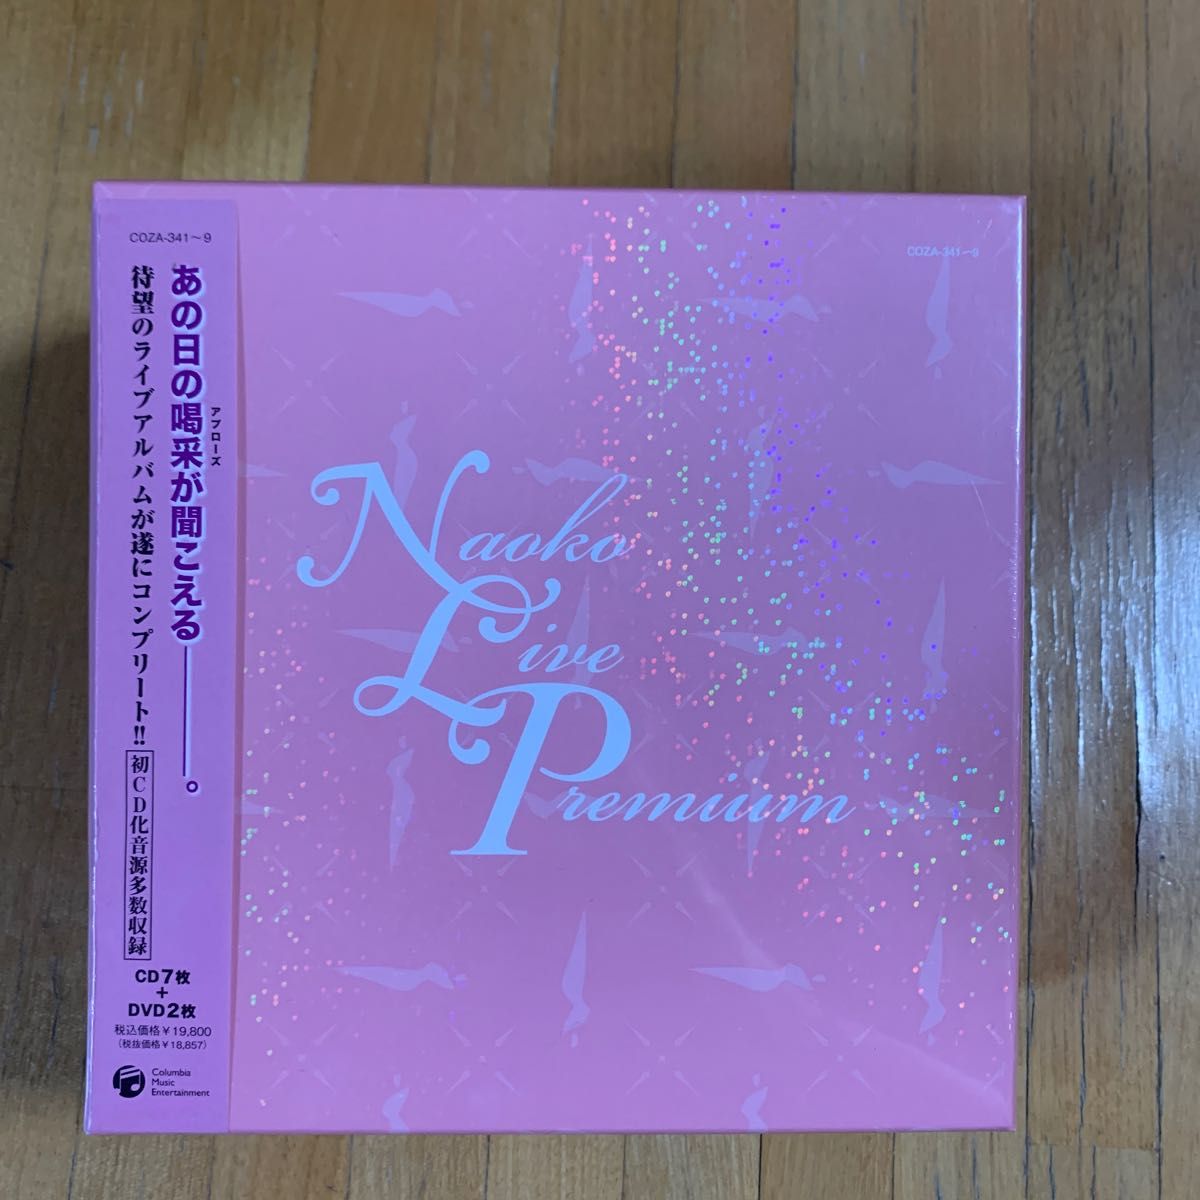 【新品未開封】NAOKO LIVE PREMIUM 河合奈保子ライブアルバムBOX